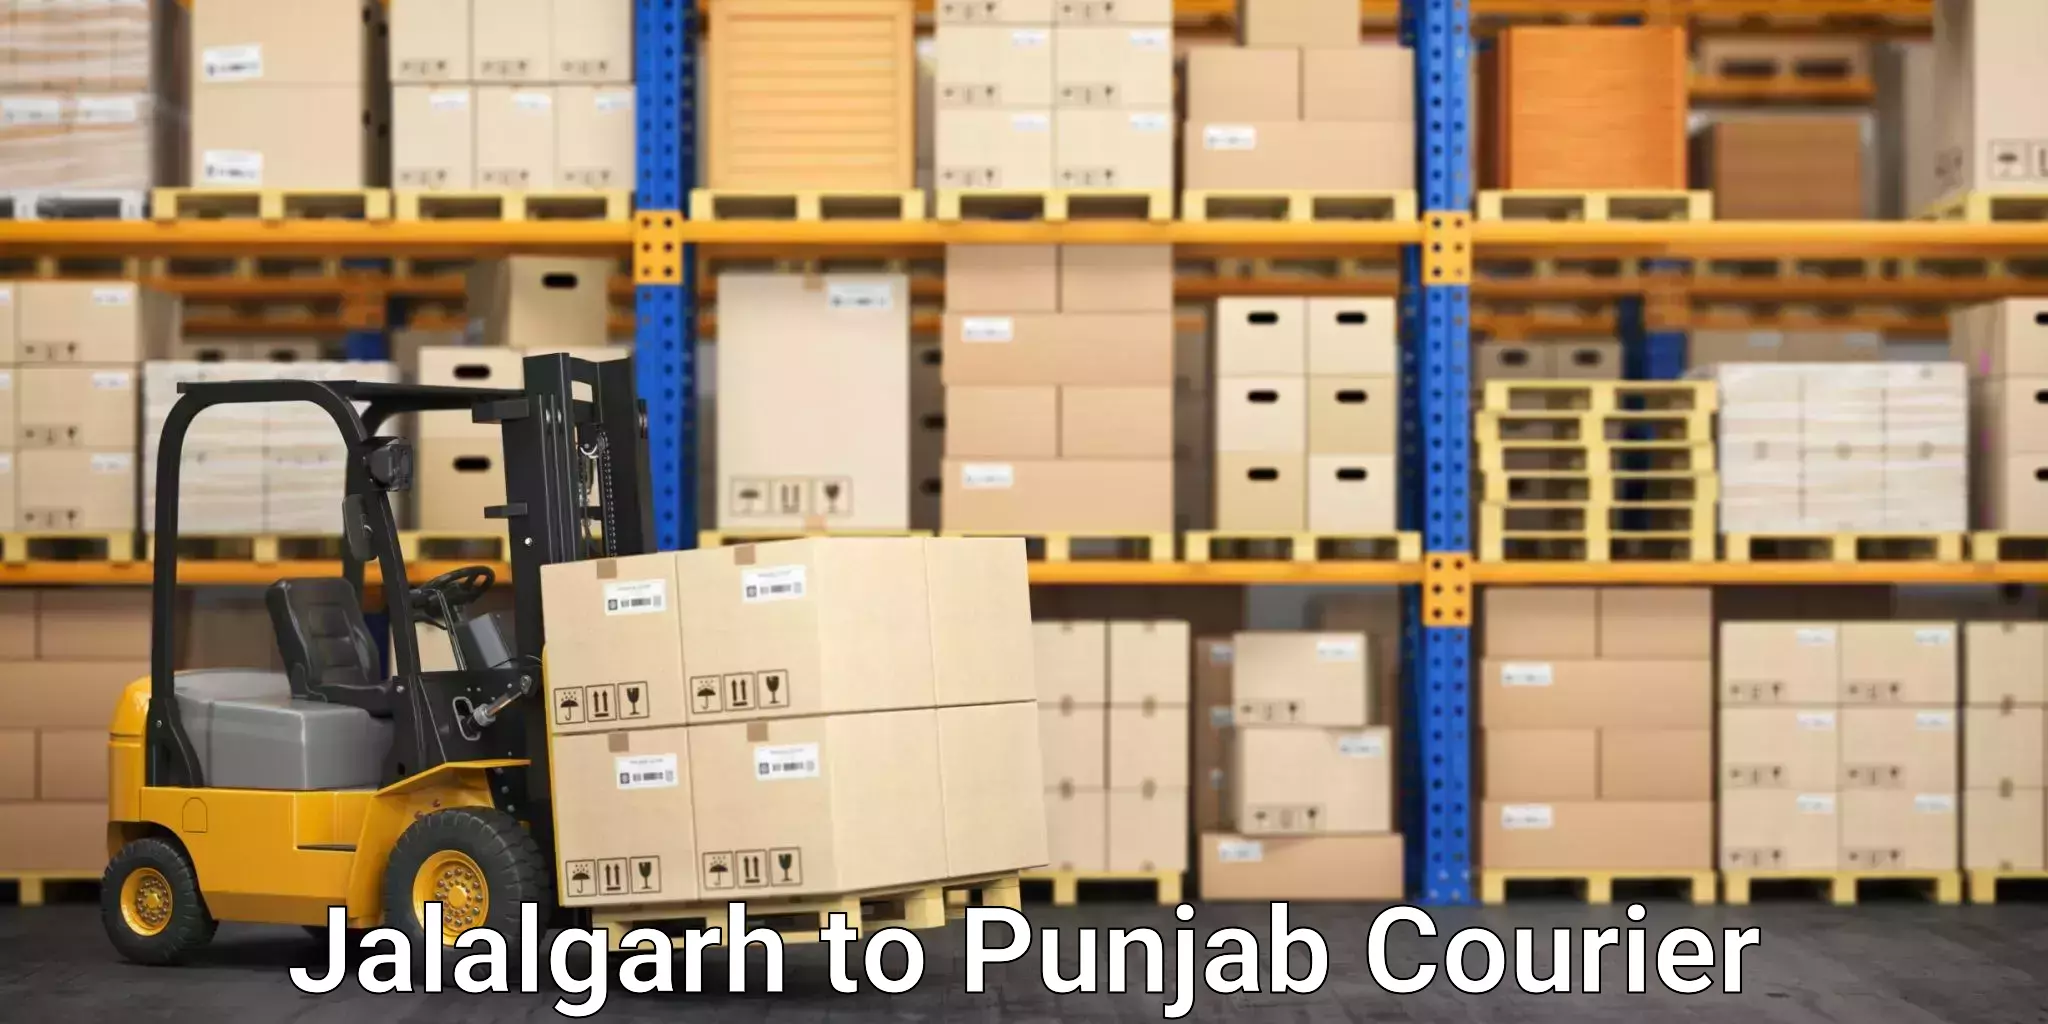 Furniture transport experts Jalalgarh to Punjab